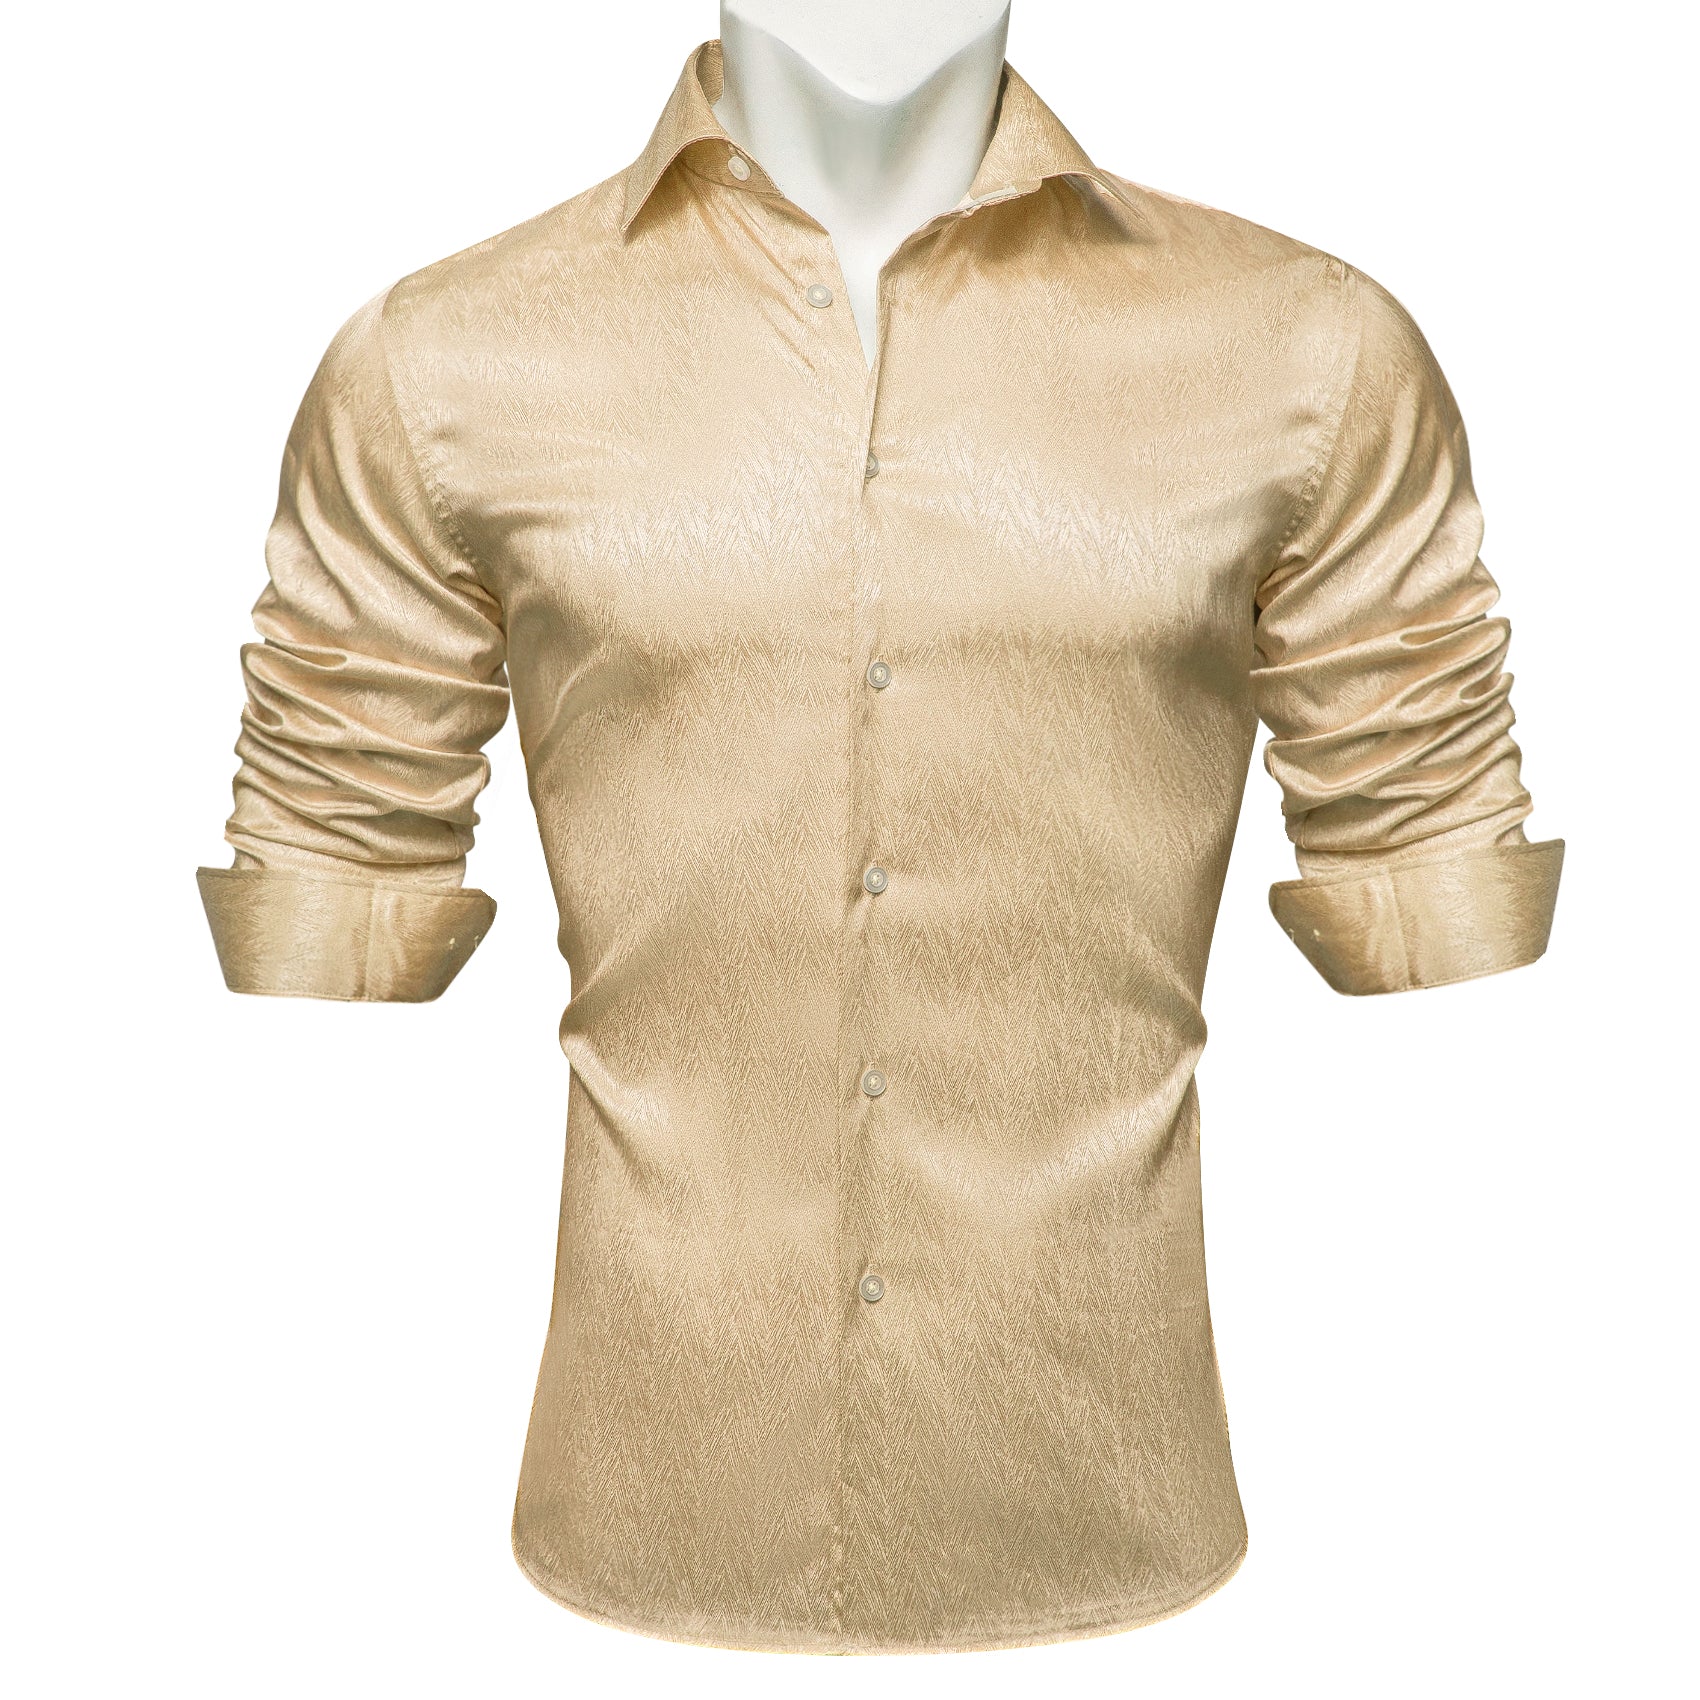 Barry.wang Button Down Shirt Fashion Champagne Solid Silk Men's Shirt